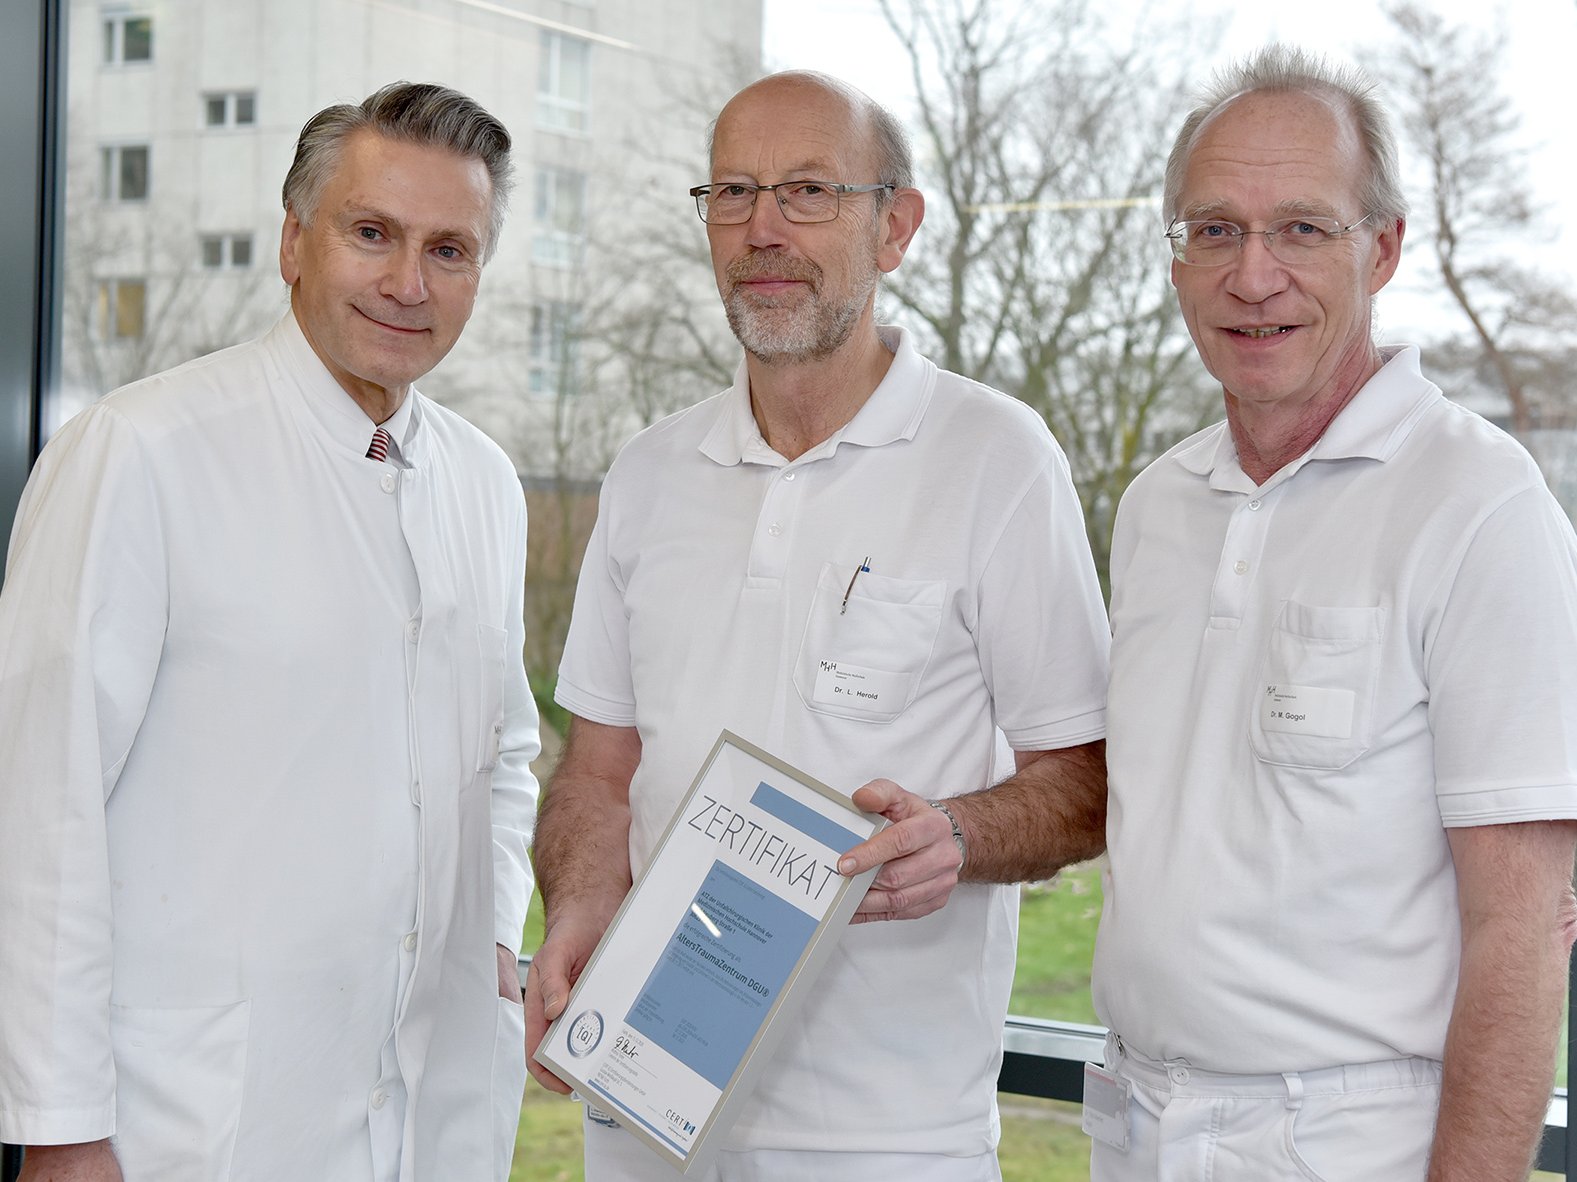 Klinikdirektor Professor Krettek, Doktor Herold und Doktor Gogol mit dem Zertifikat der DGU